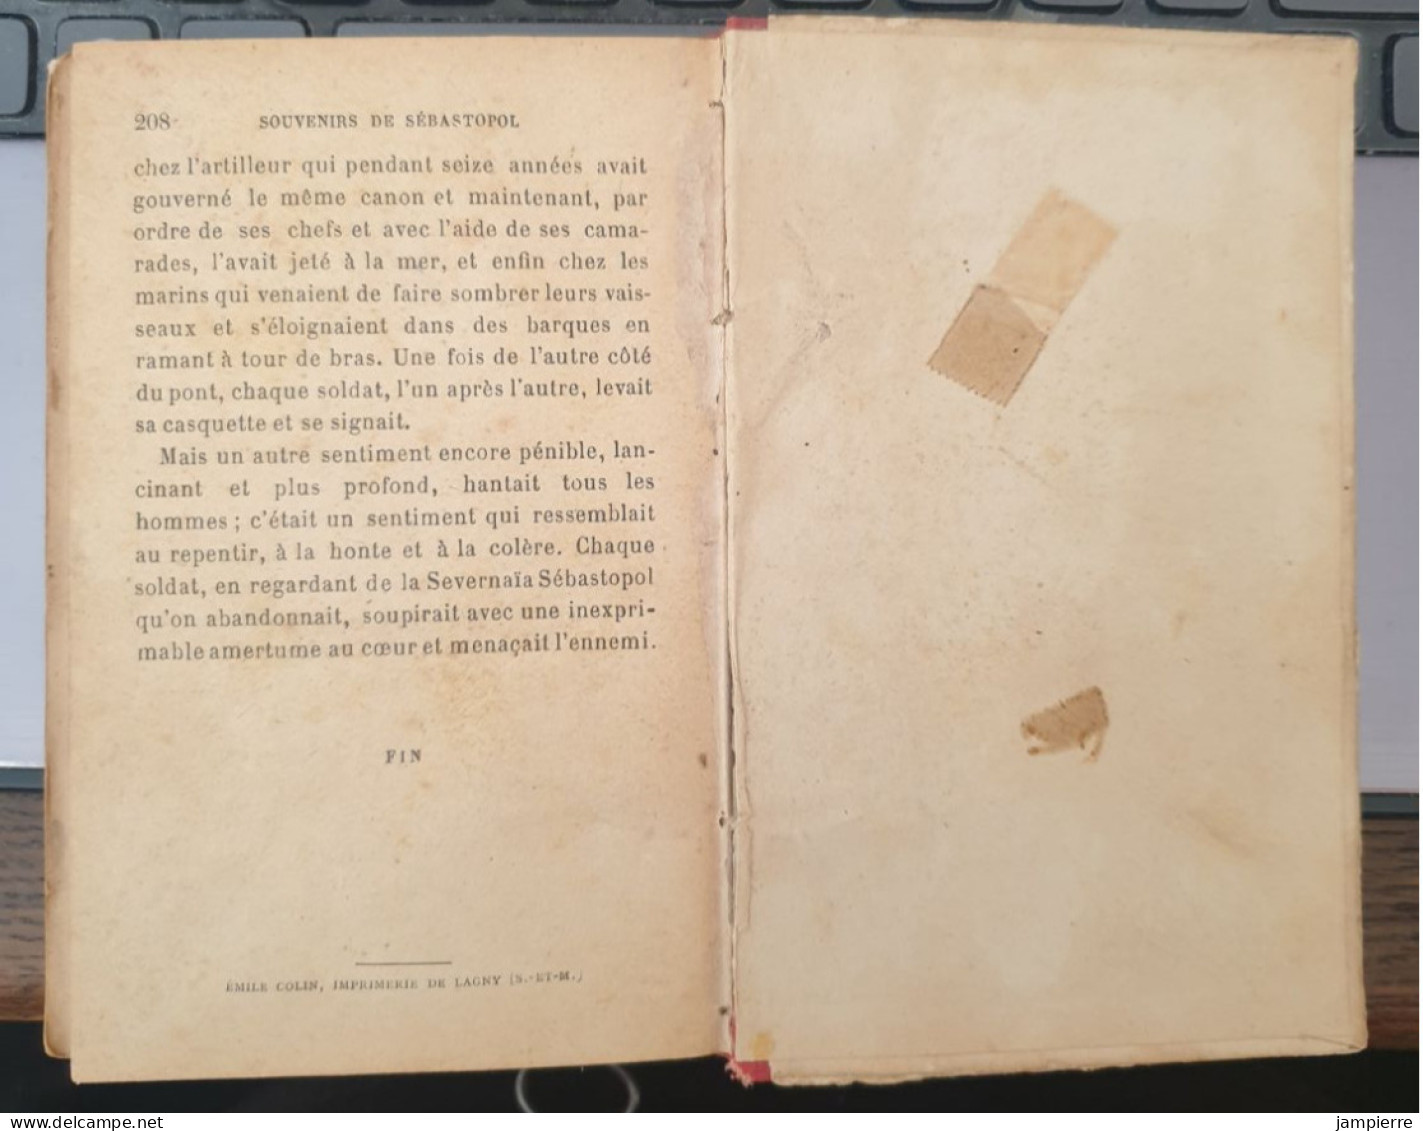 Sébastopol en mai et août 1855 - Comte Léon Tolstoi - Souvenirs - Edition Flammarion, circa 1900